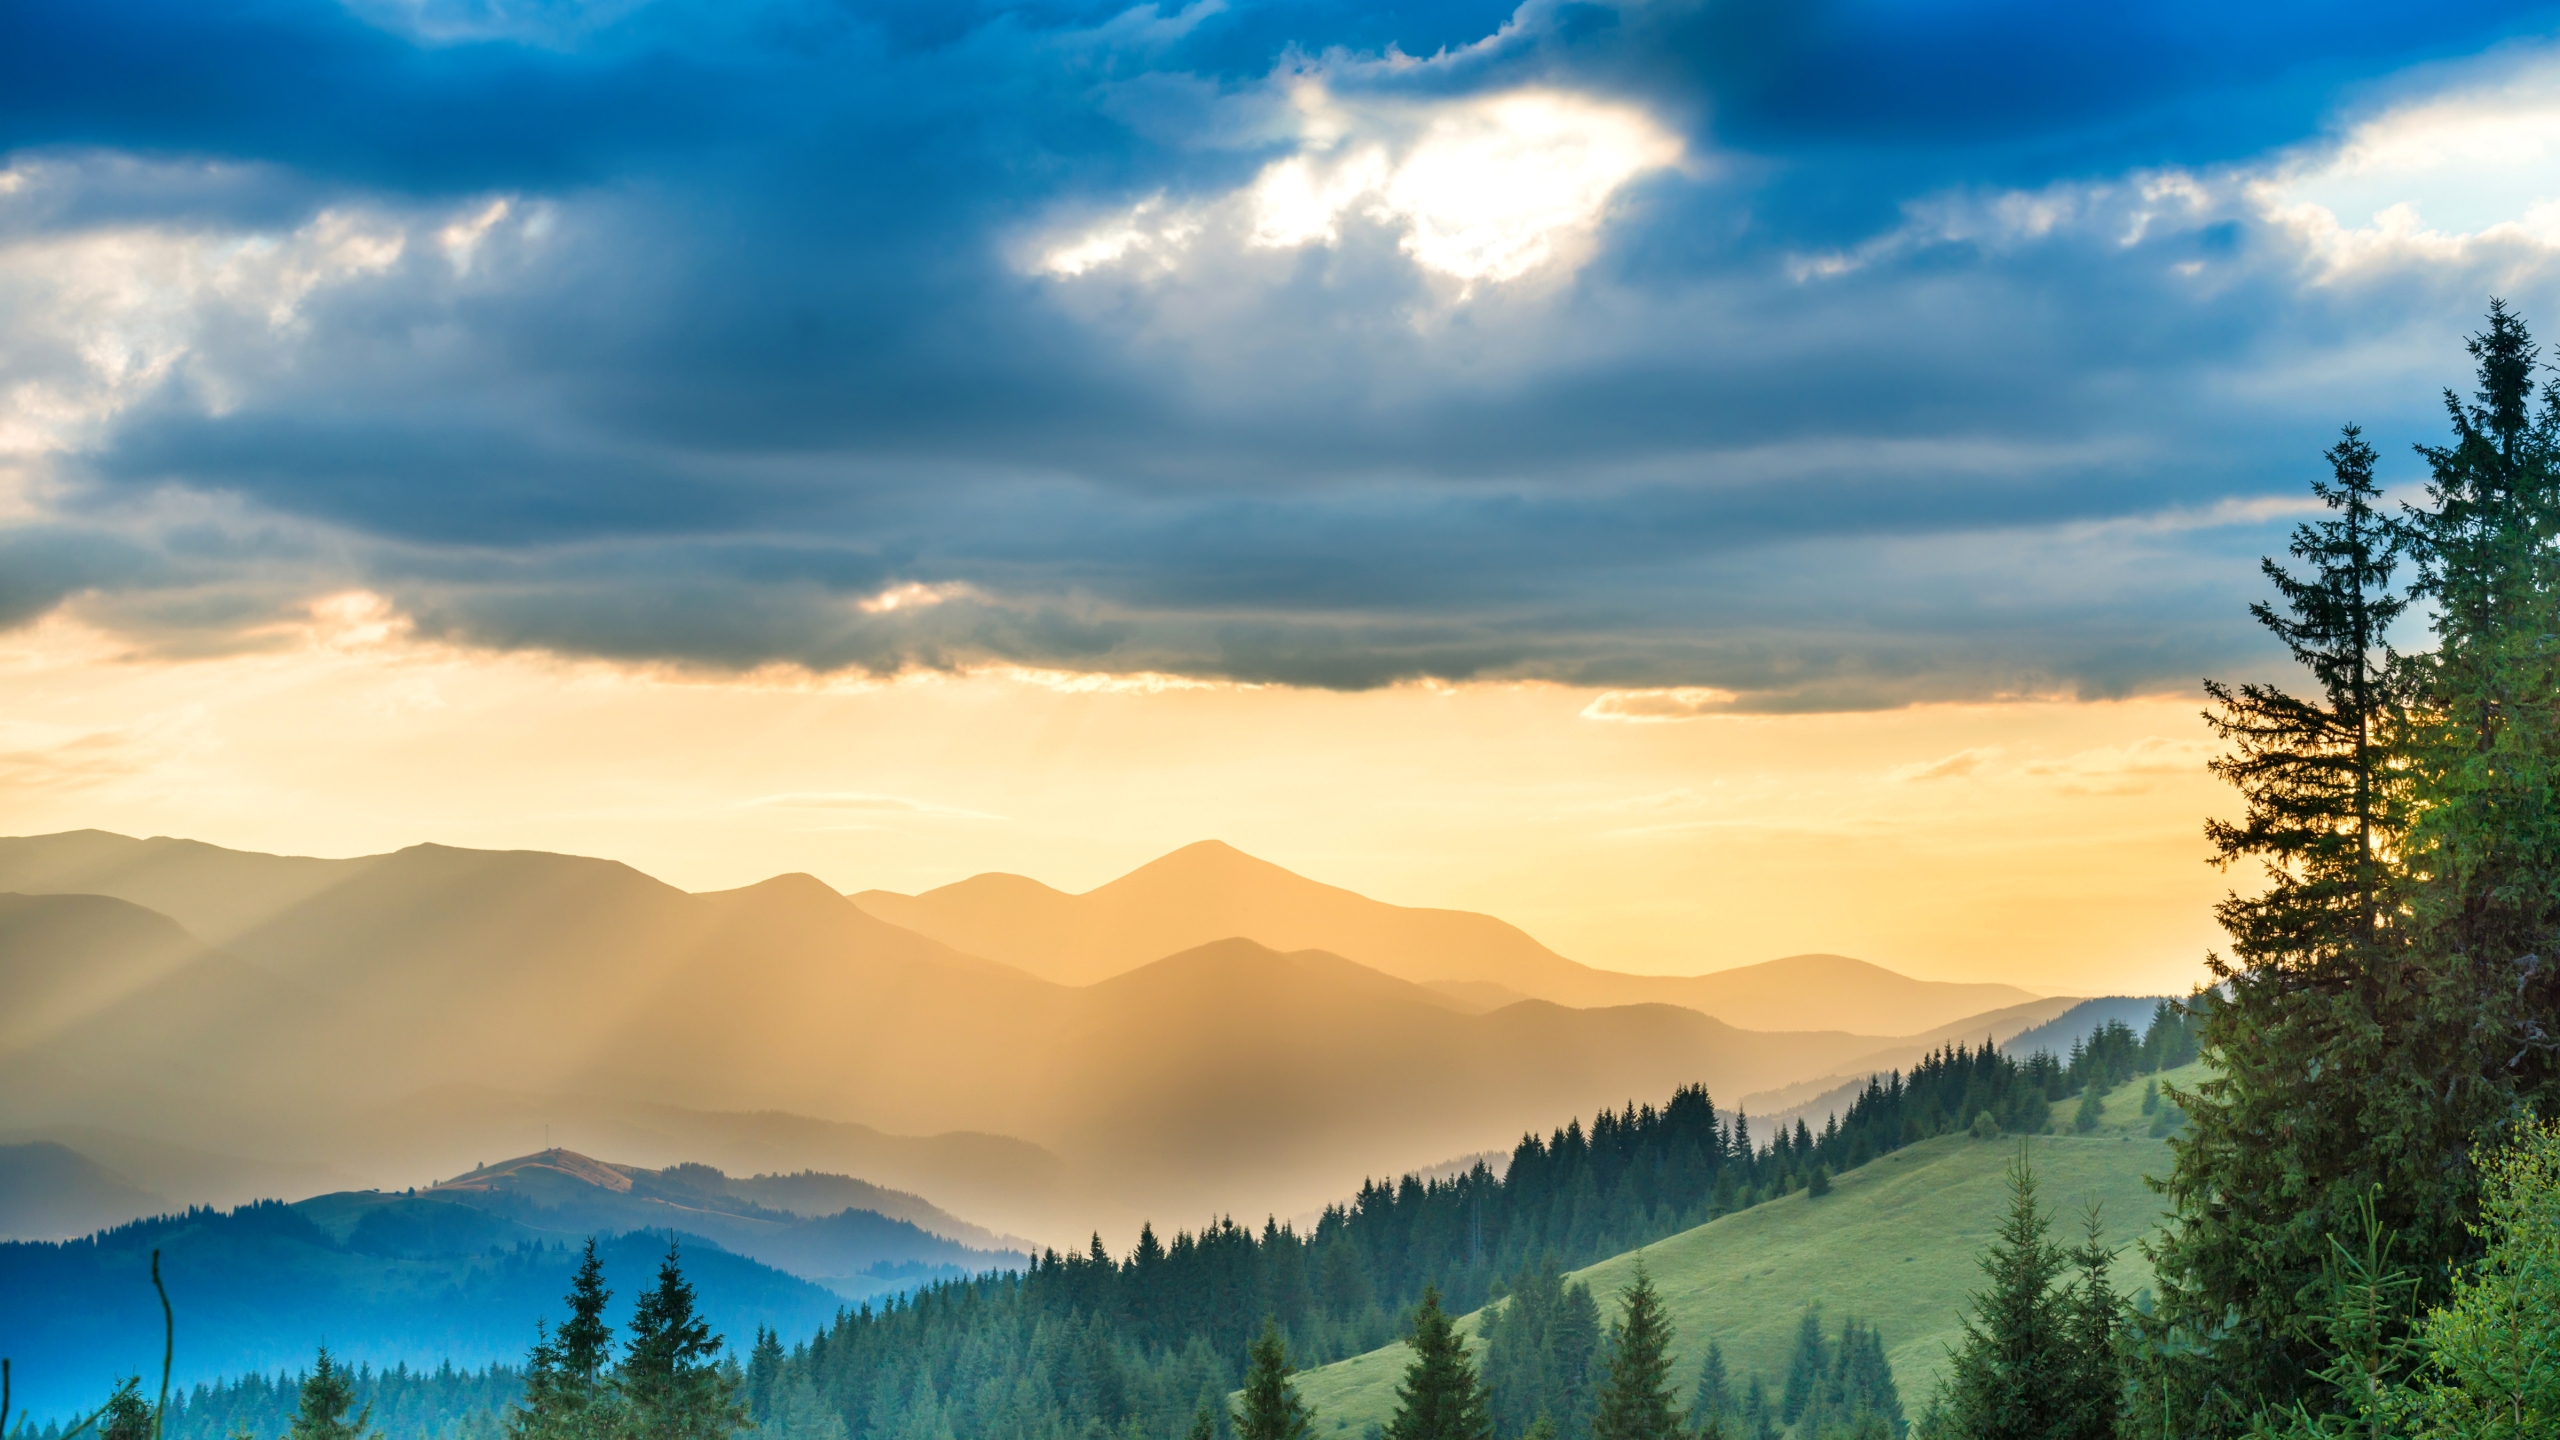 2560x1440 Landscape Mountains Sunbeam Nature 1440p Resolution Wallpaper